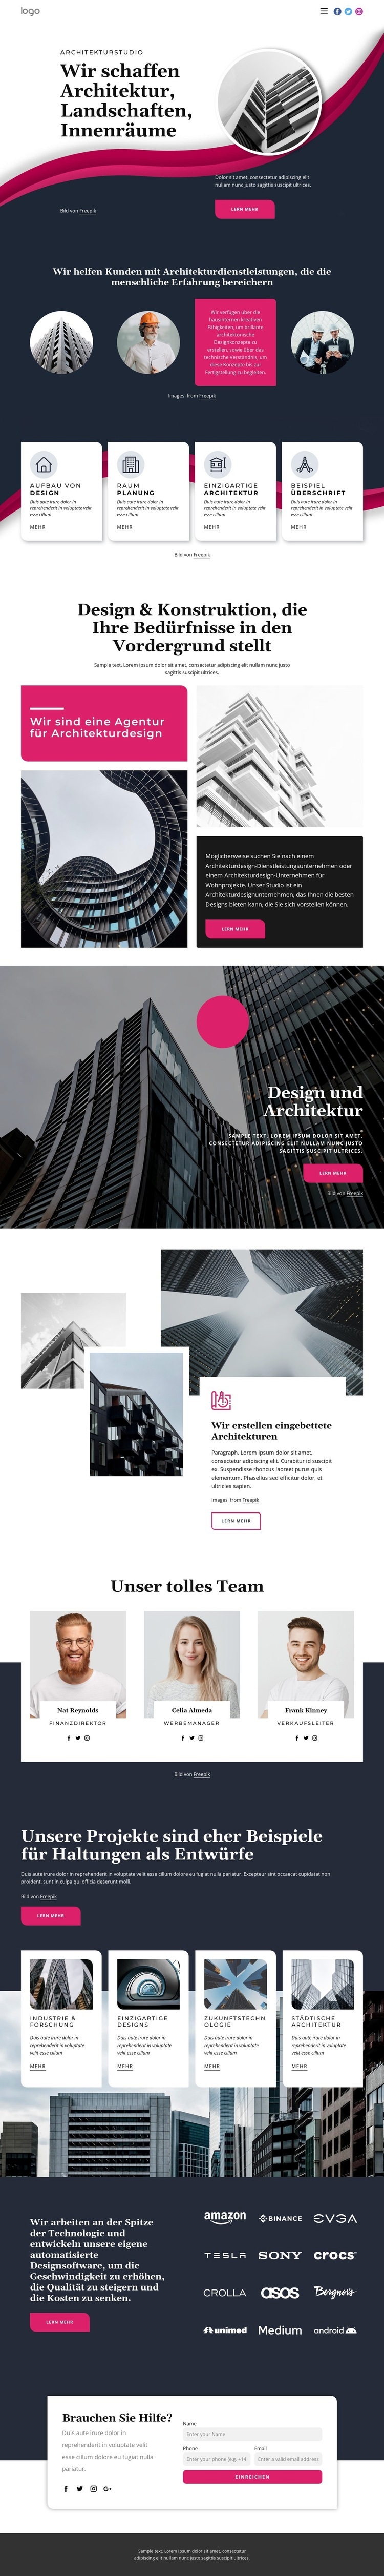 Wir schaffen großartige Architektur Website design